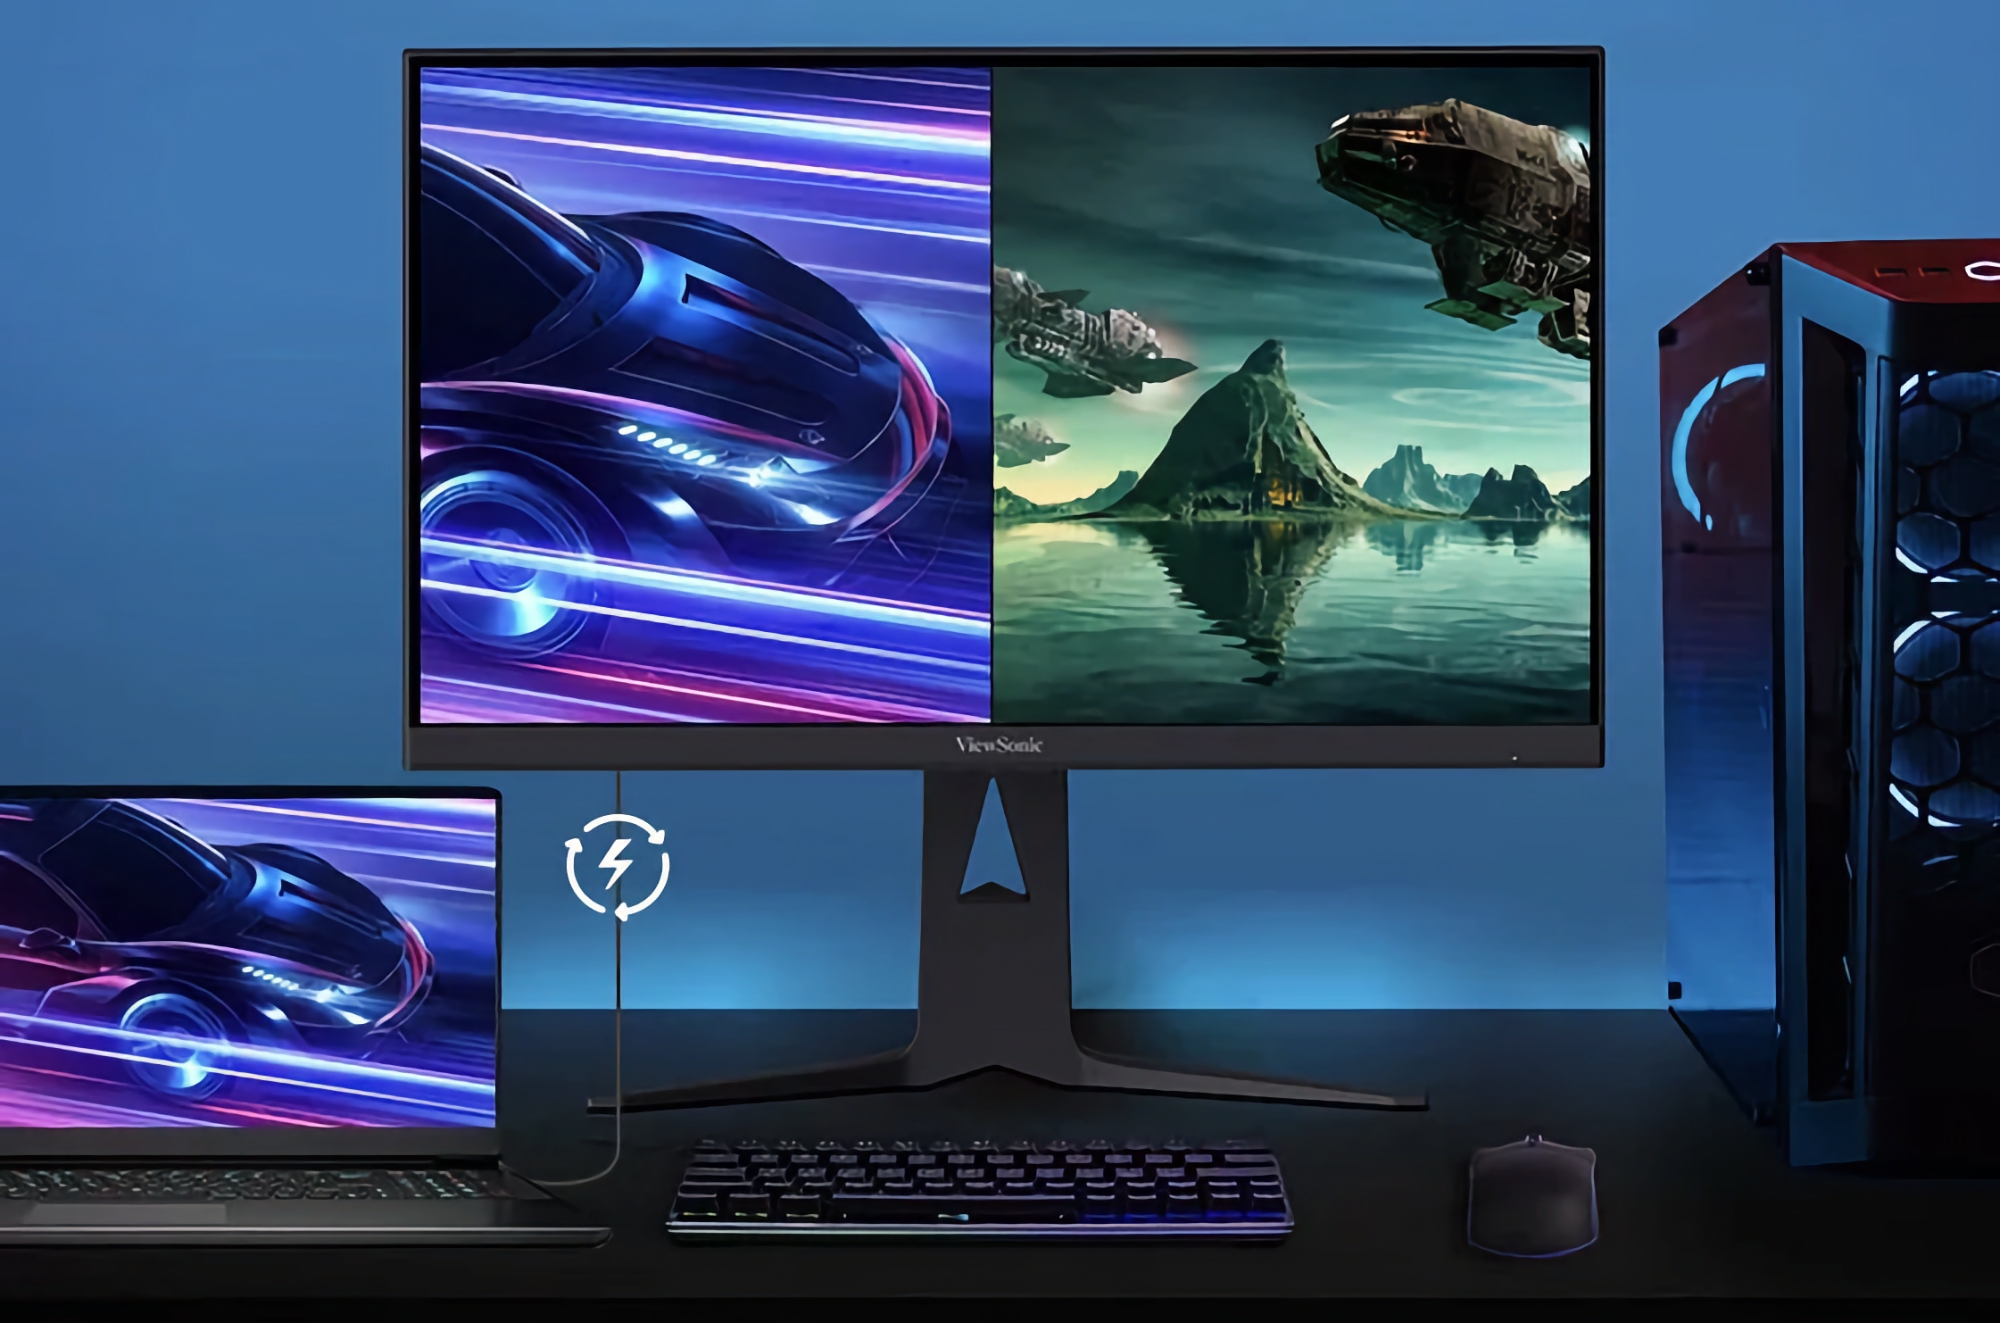 ViewSonic ha presentado un monitor gaming 4K con panel Fast IPS de 165 Hz y tecnología IGZO